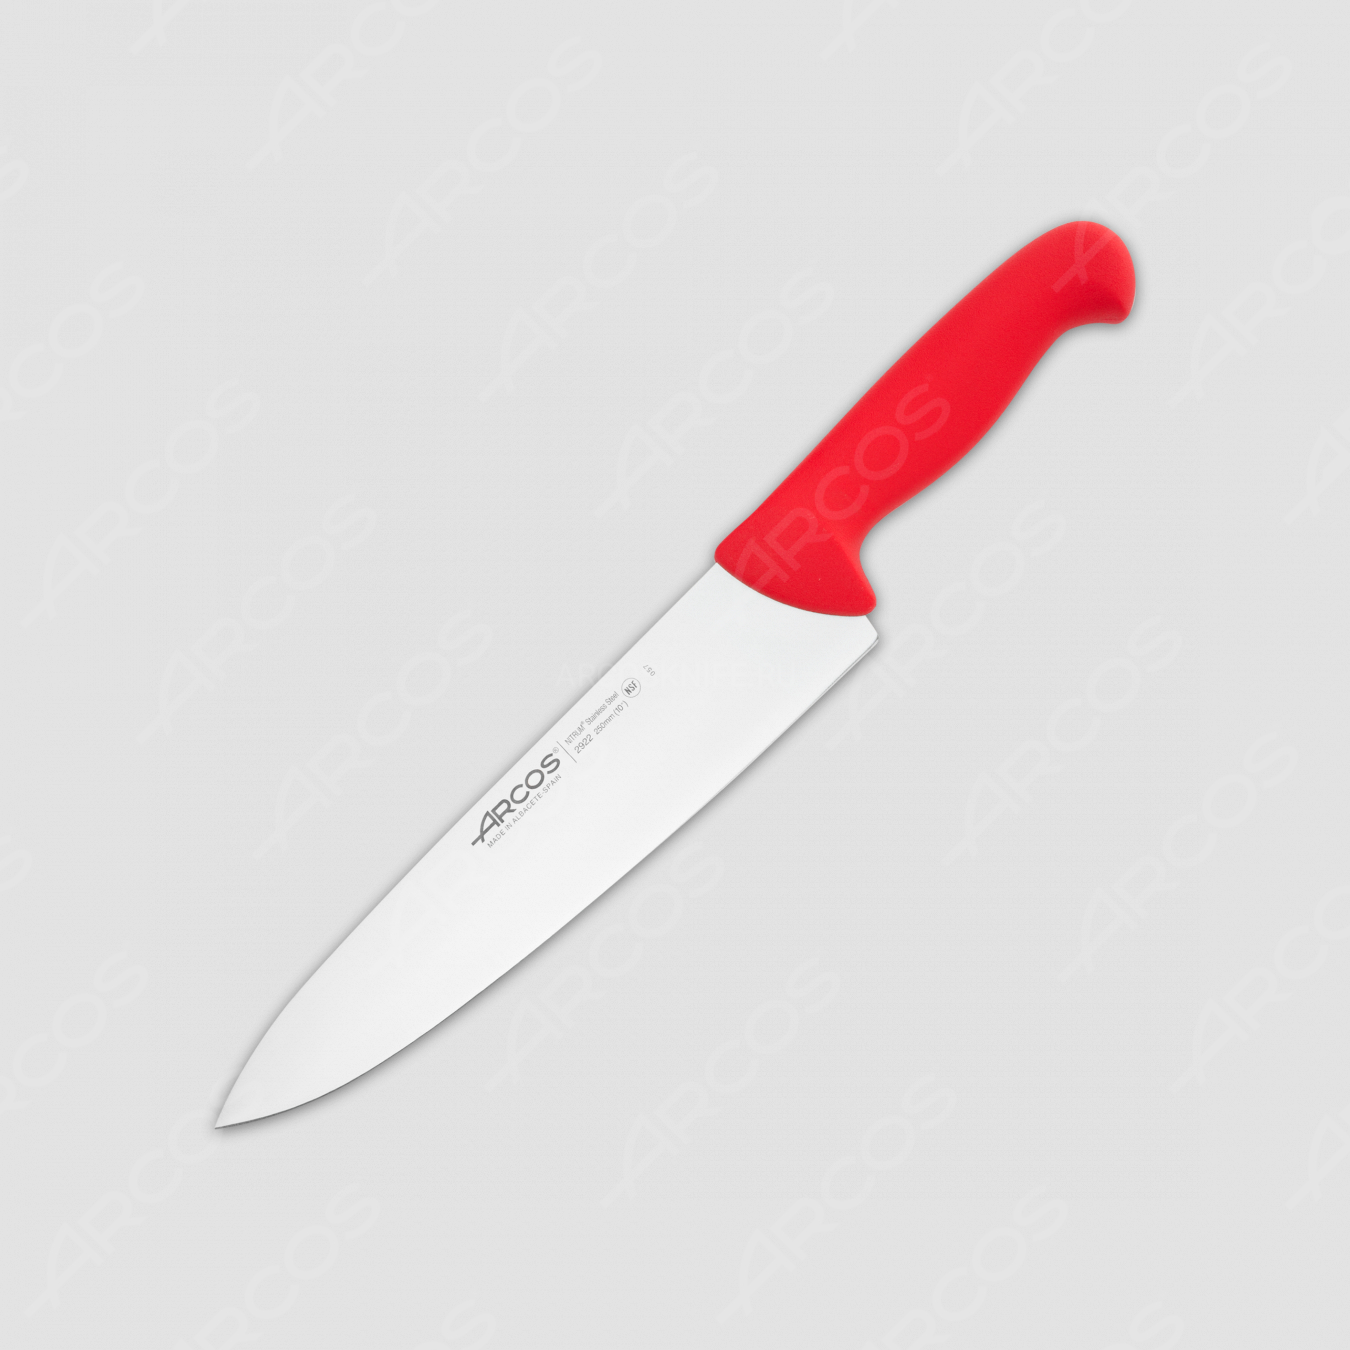 Профессиональный поварской кухонный нож 25 см, рукоять красная, серия 2900, ARCOS, Испания